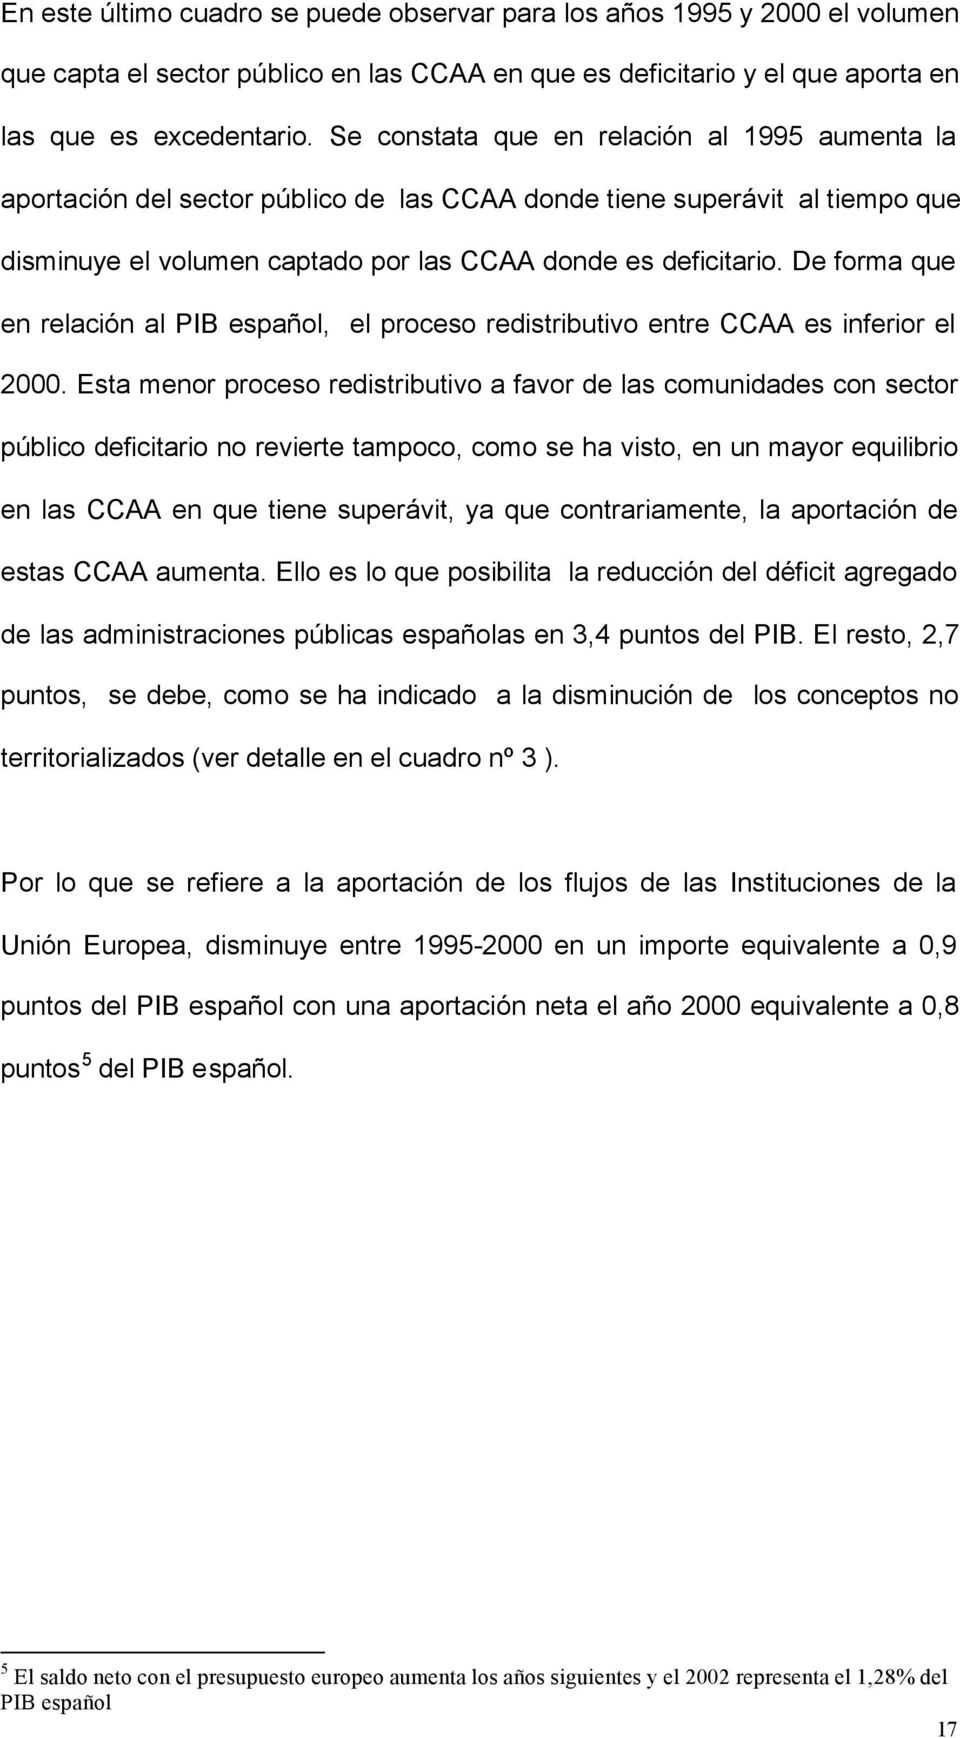 De forma que en relación al PIB español, el proceso redistributivo entre CCAA es inferior el 2000.